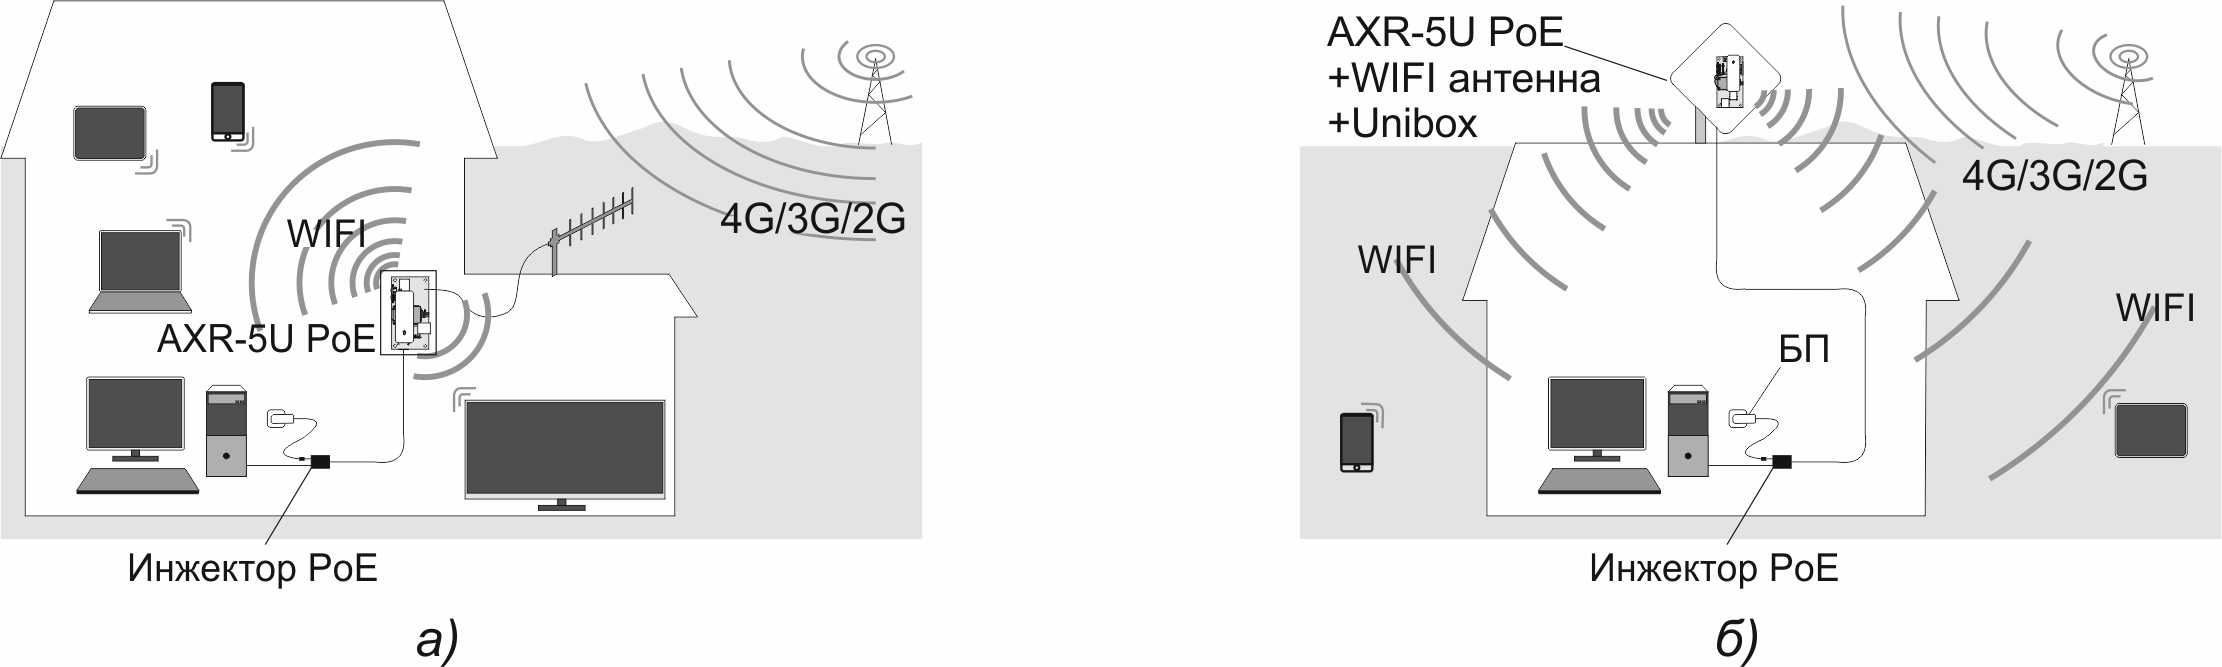 Варианты использования AXR-5U PoE